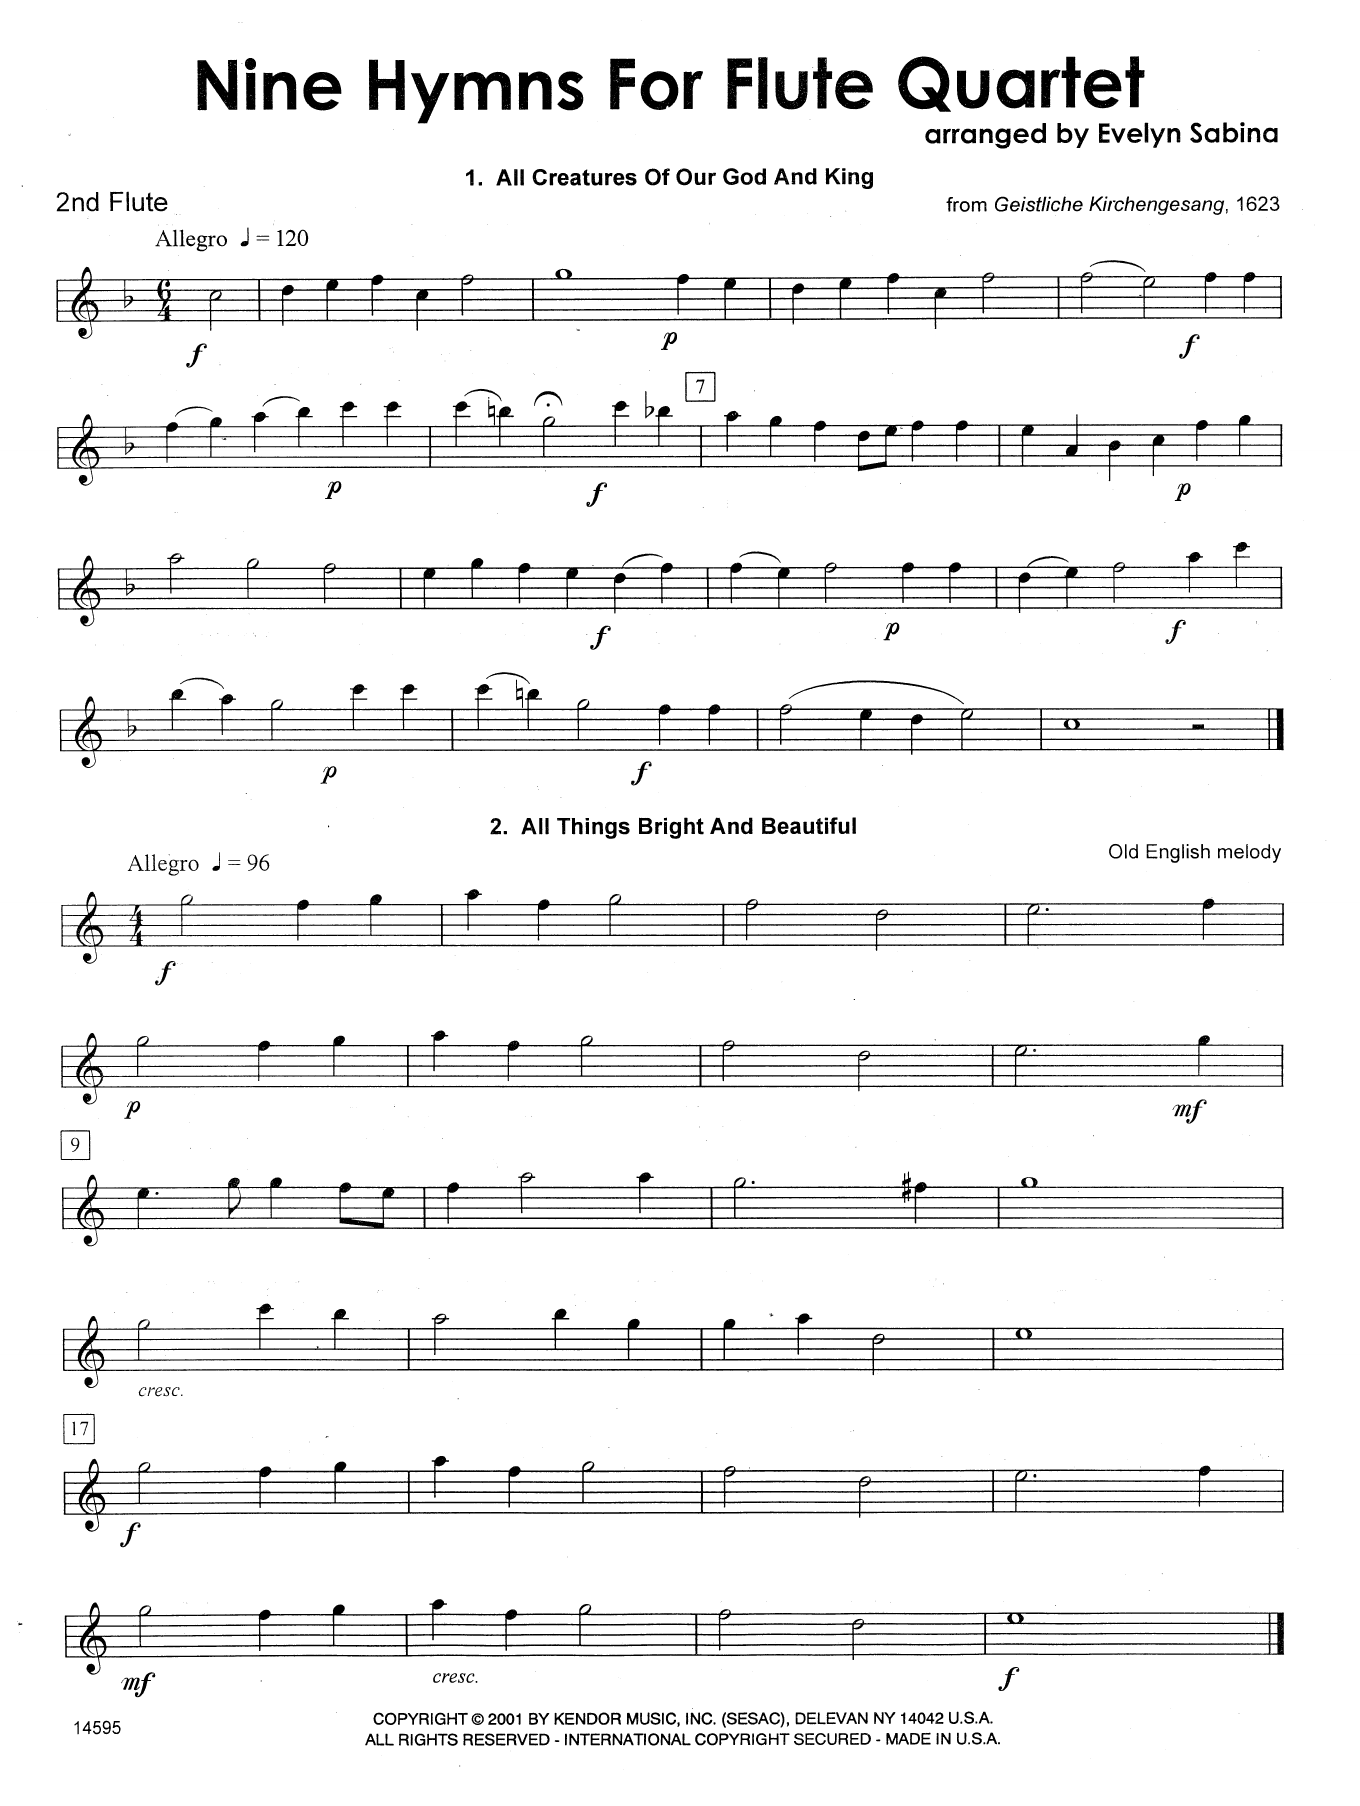 Download Evelyn Sabina Nine Hymns For Flute Quartet - 2nd Flut Sheet Music